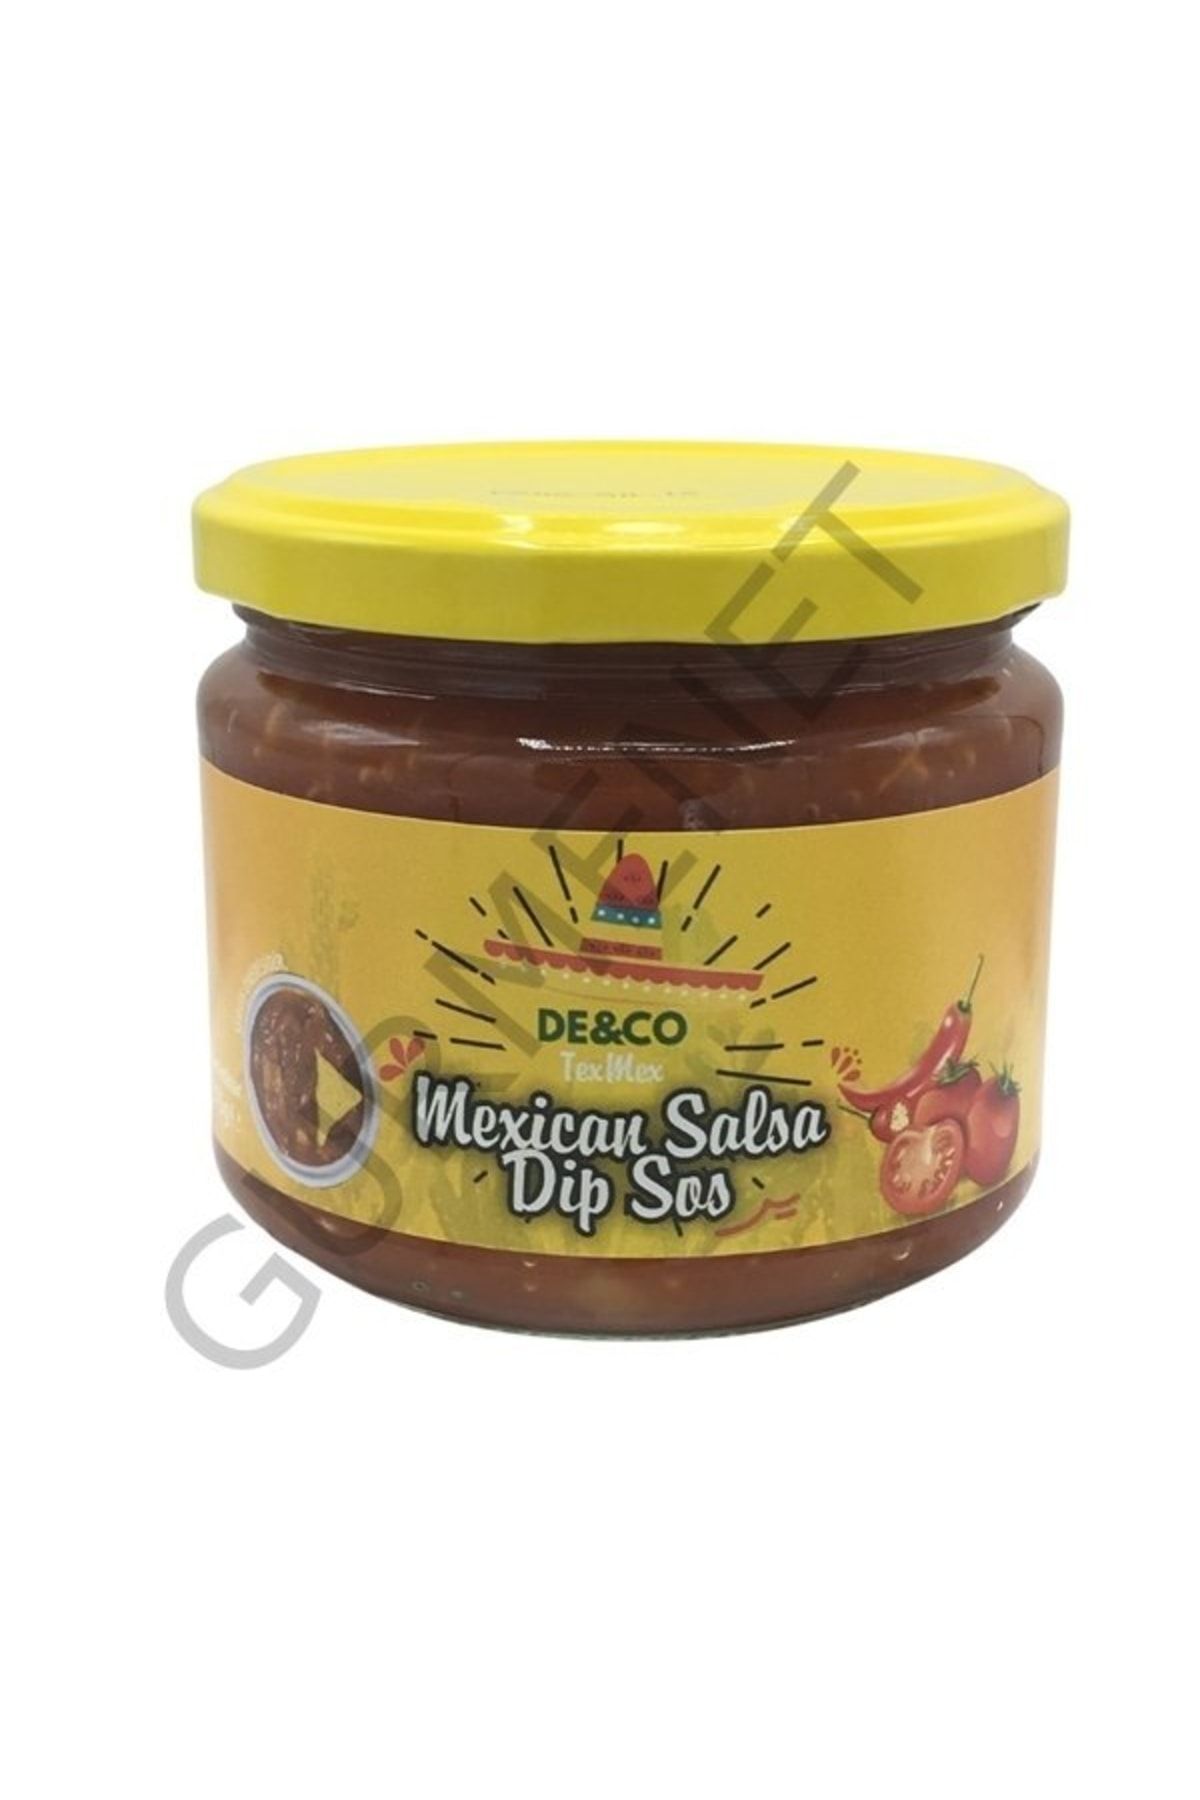 DECO De&co Mexican Salsa Dip Sauce Meksikan Salsa Dip Sos 300 Gr.